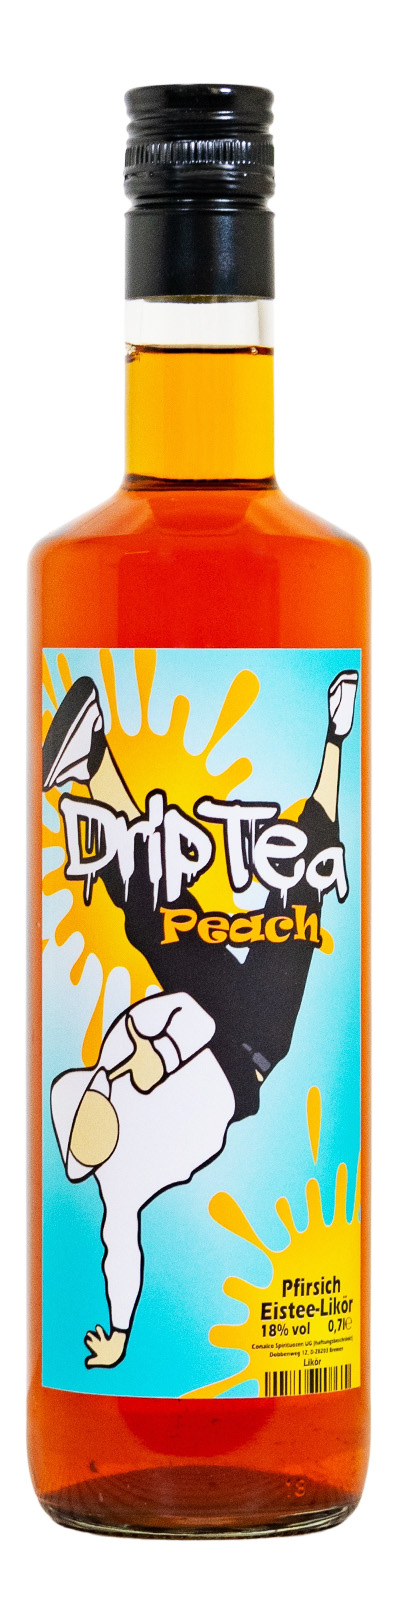 DripTea Peach Pfirsich Eistee-Likör - 0,7L 18% vol